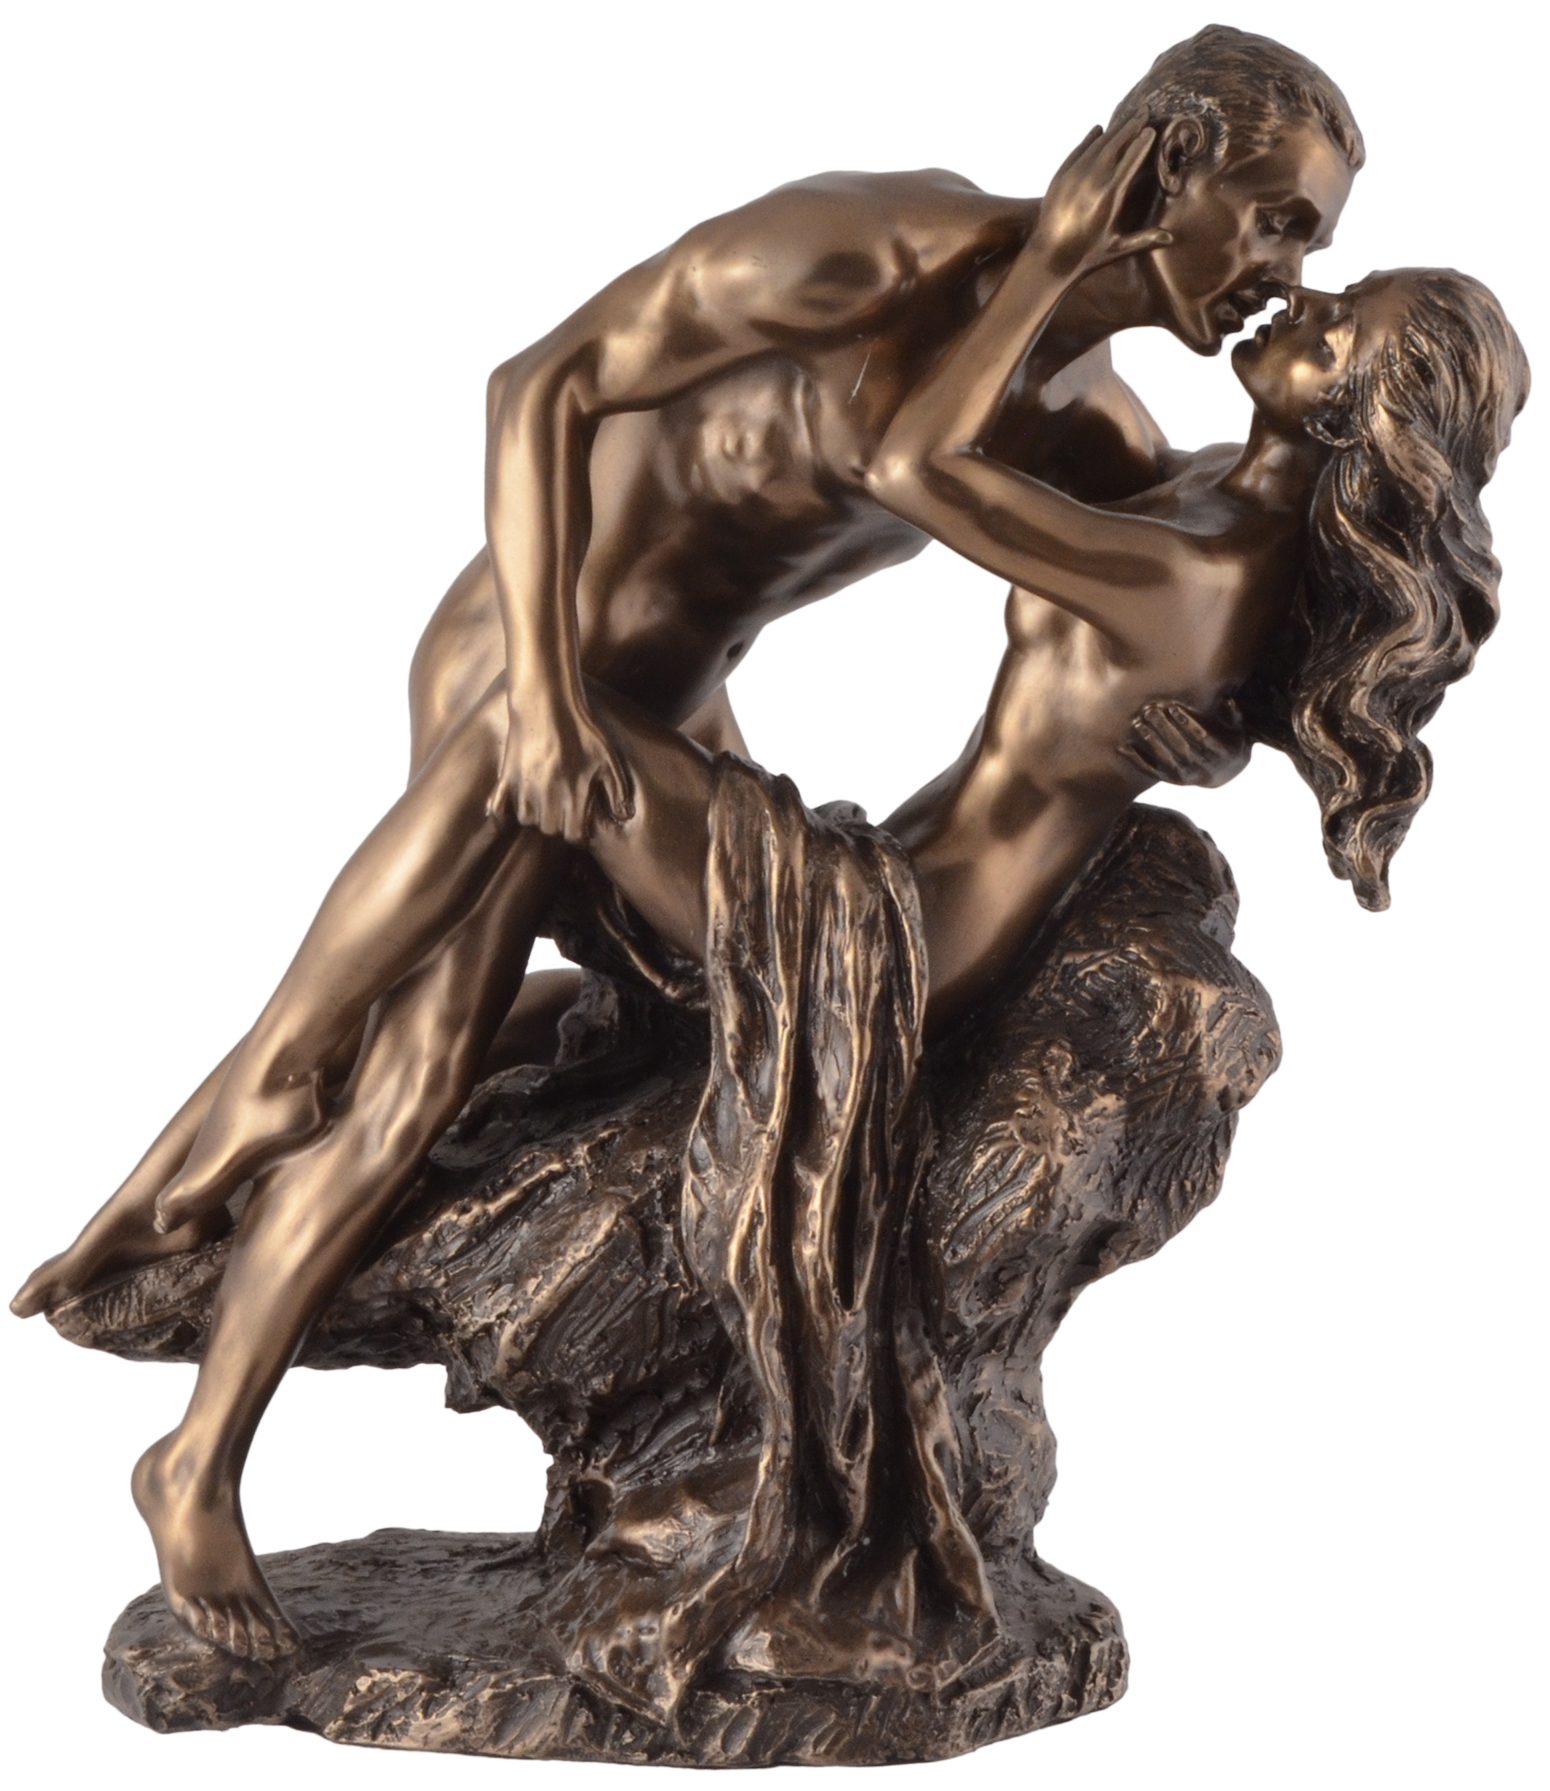 Vogler direct Gmbh Dekofigur Die Liebenden "Love in Spring" - bronziert by Veronese, von Hand bronziert, LxBxH ca. 21x10x22cm